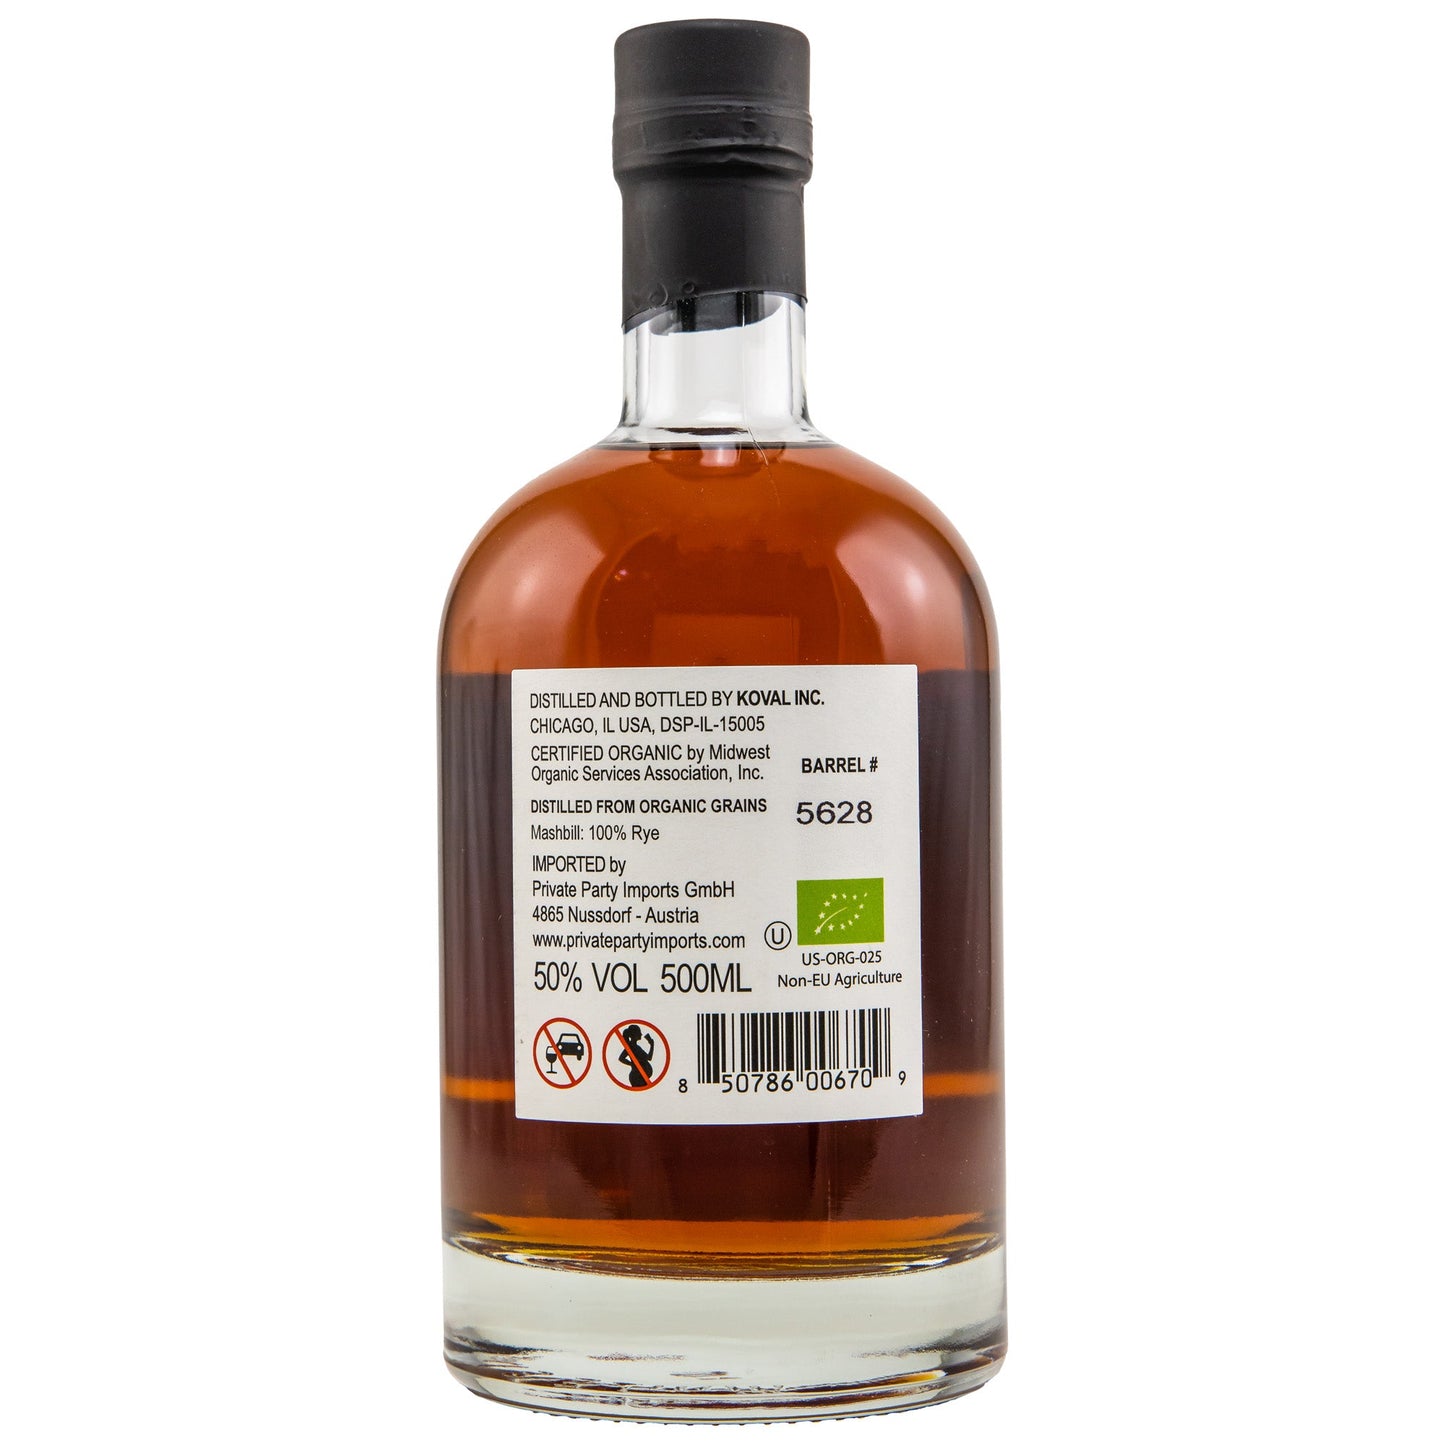 Koval | Single Barrel Rye Whiskey | Bottled in Bond | #5628 | 0,5l | 50%GET A BOTTLE